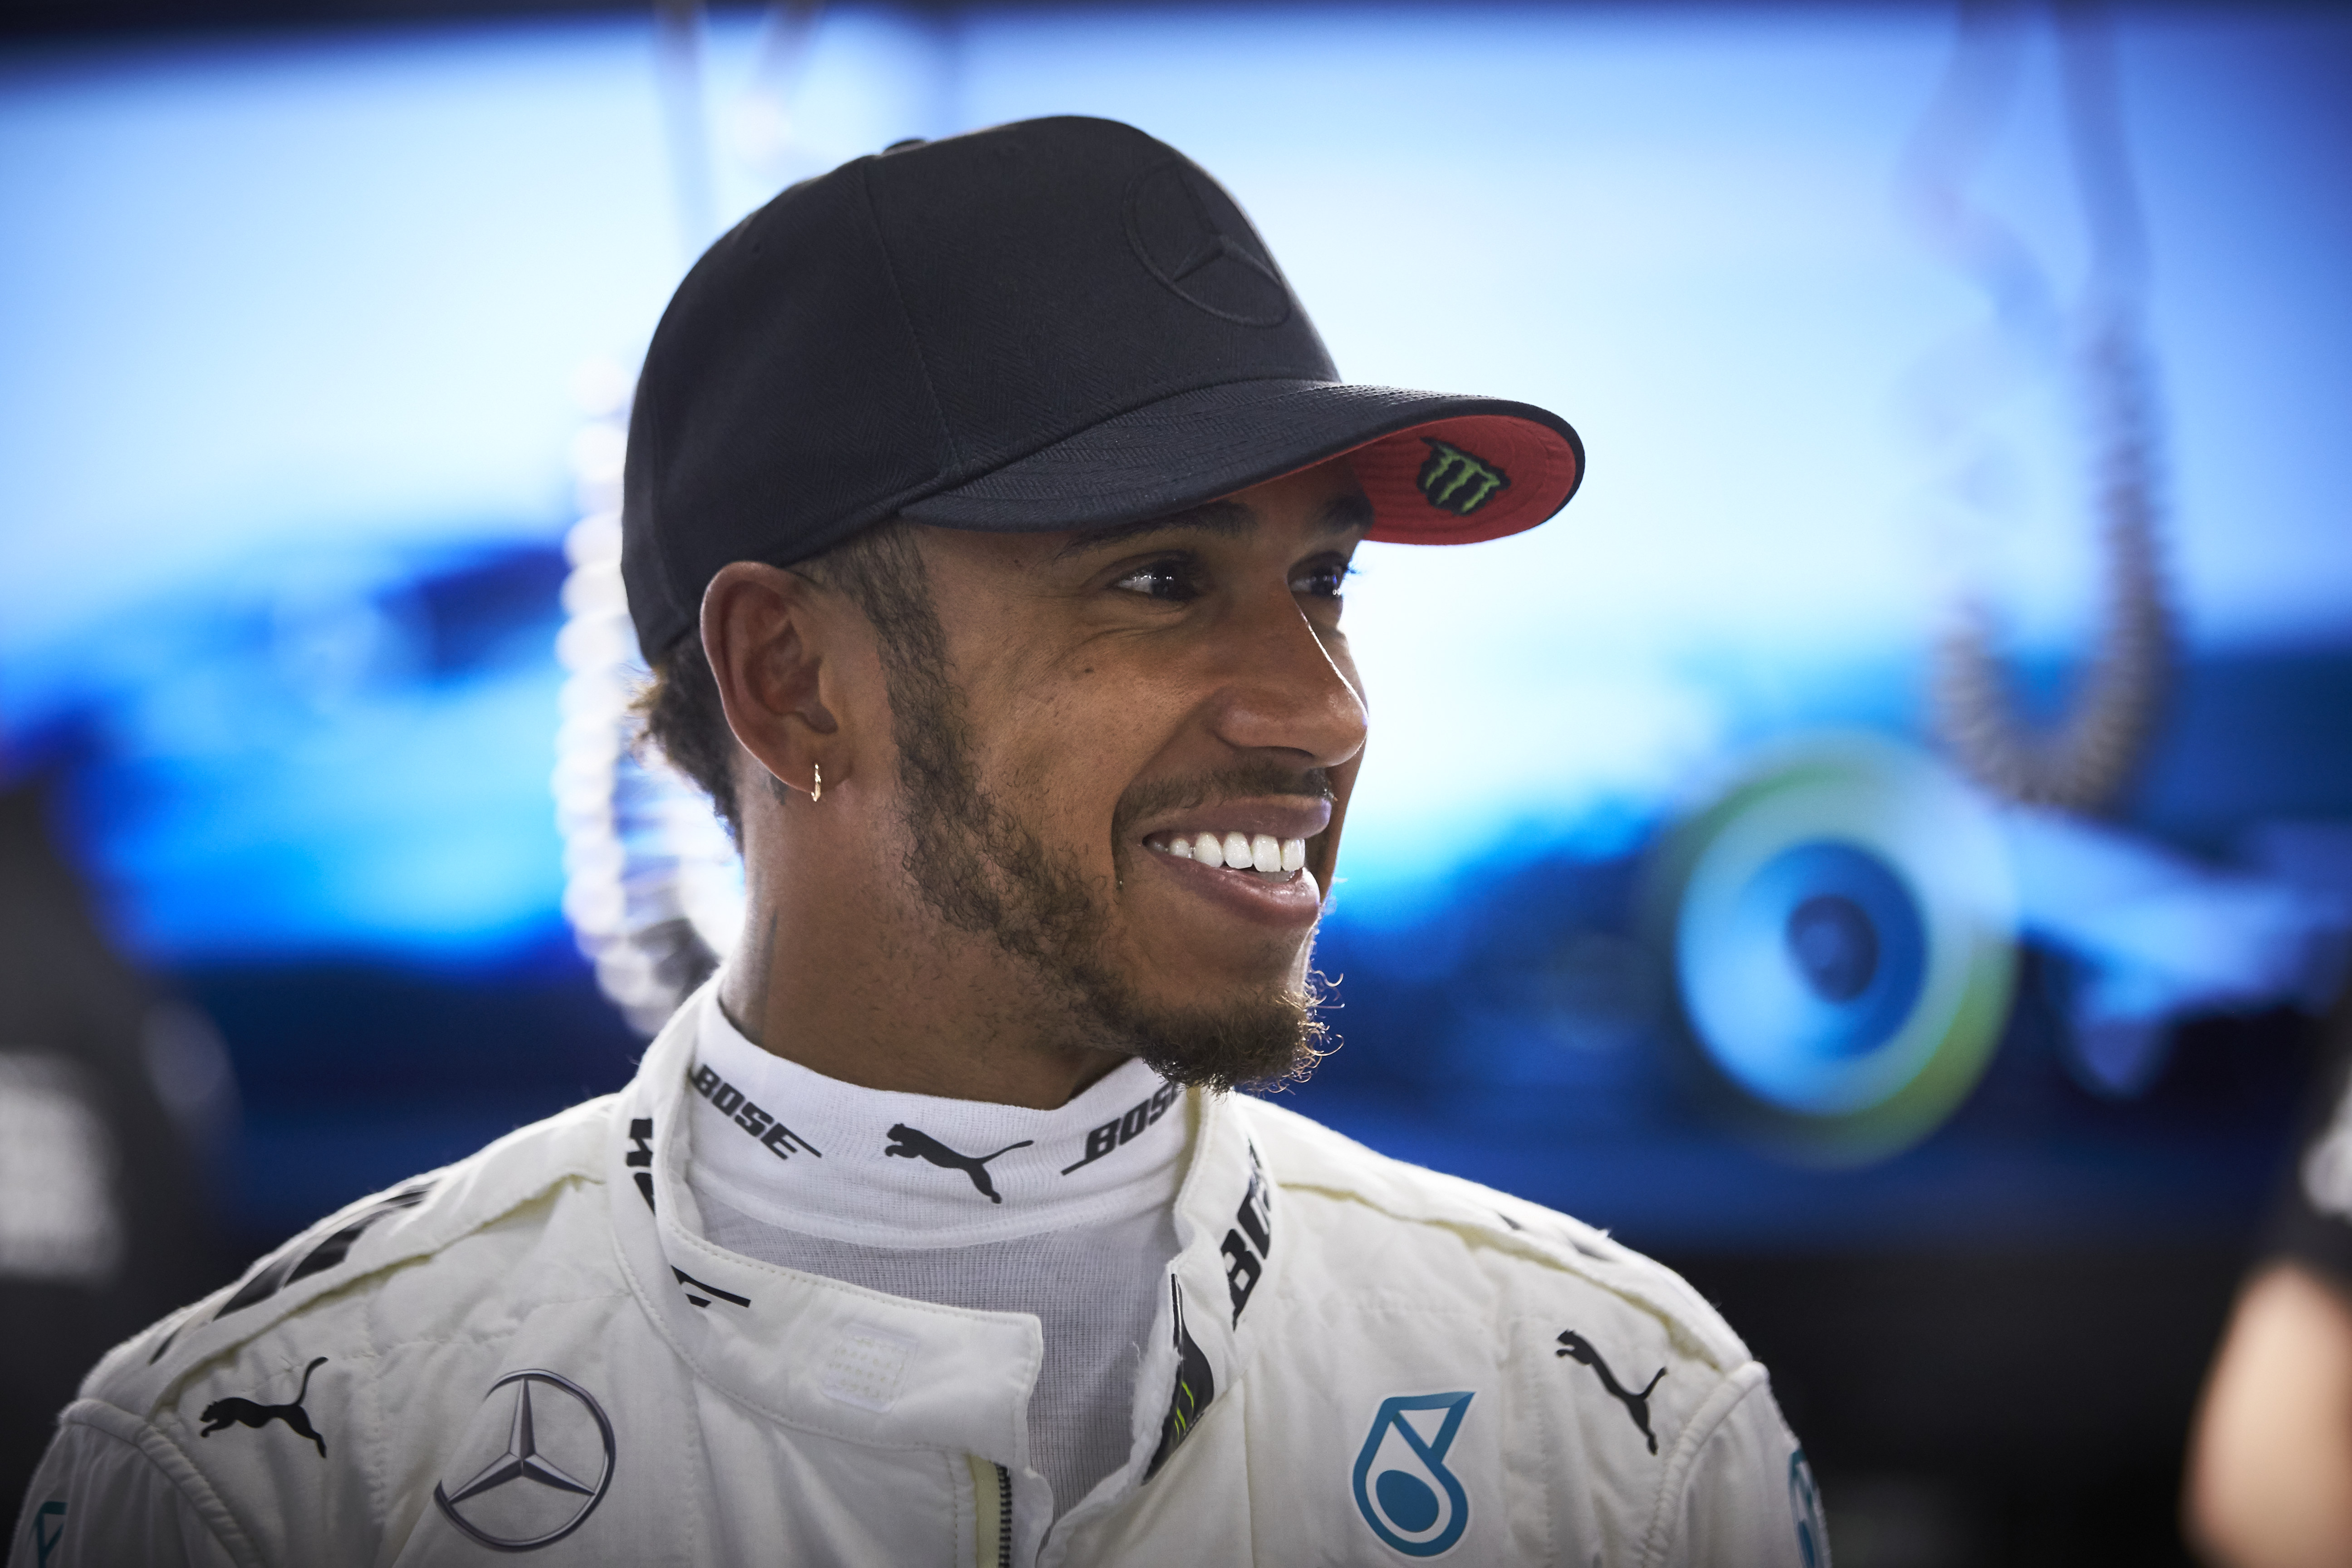 Lewis Hamilton smiles